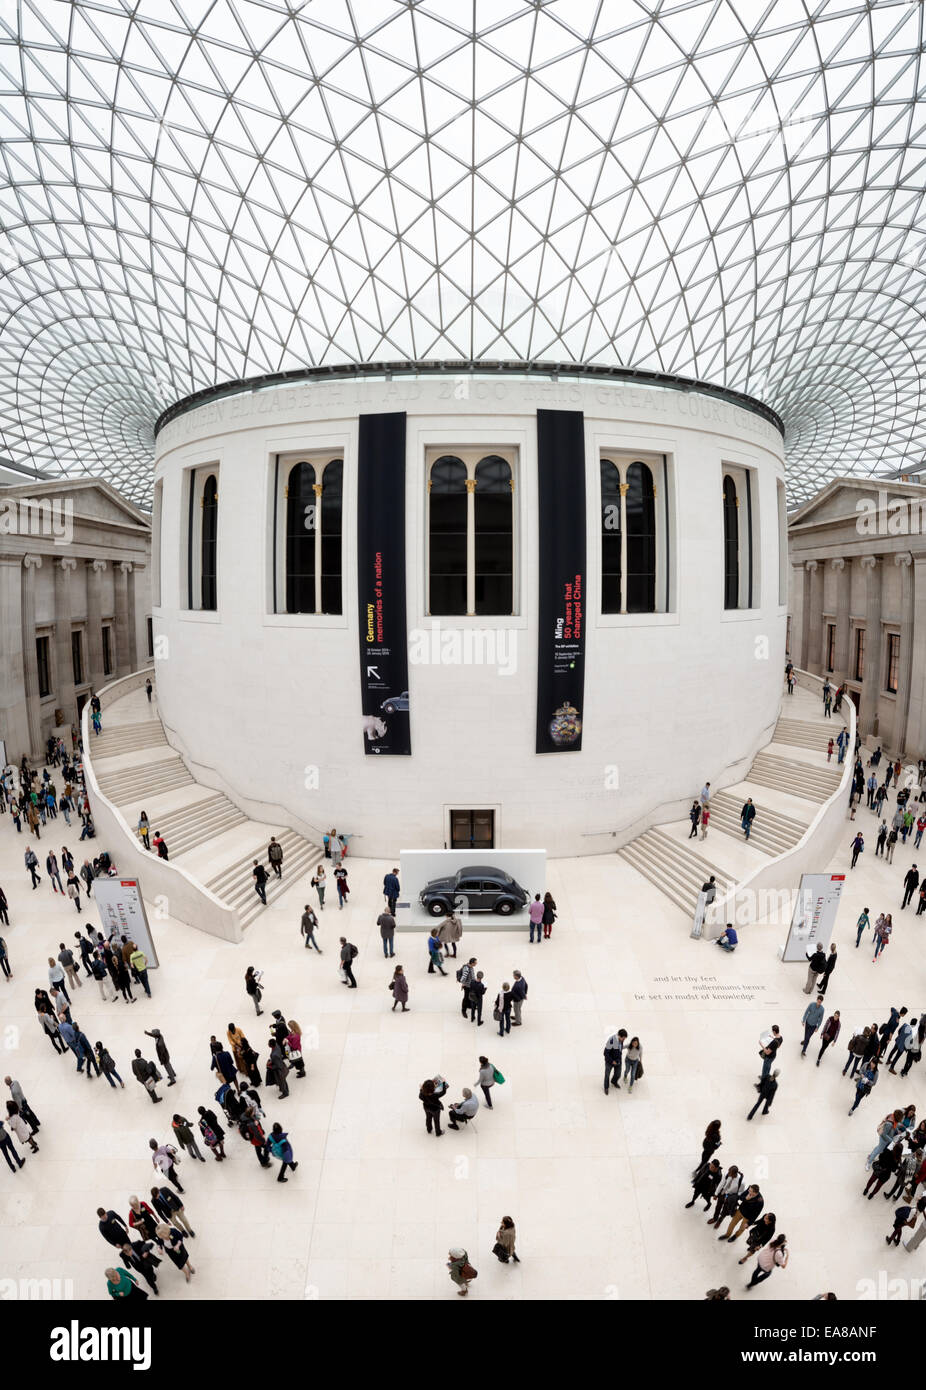 LONDON, GROSSBRITANNIEN - Die markanten Great Court des British Museum in London. Entworfen von Foster & Partners, seine formale Name ist die Queen Elizabeth II Great Court. Es konvertiert der Innenhof des Museums in den größten überdachten Platz in Europa. Es umfasst zwei Hektar, mit dem runden Lesesaal in der Mitte. Stockfoto